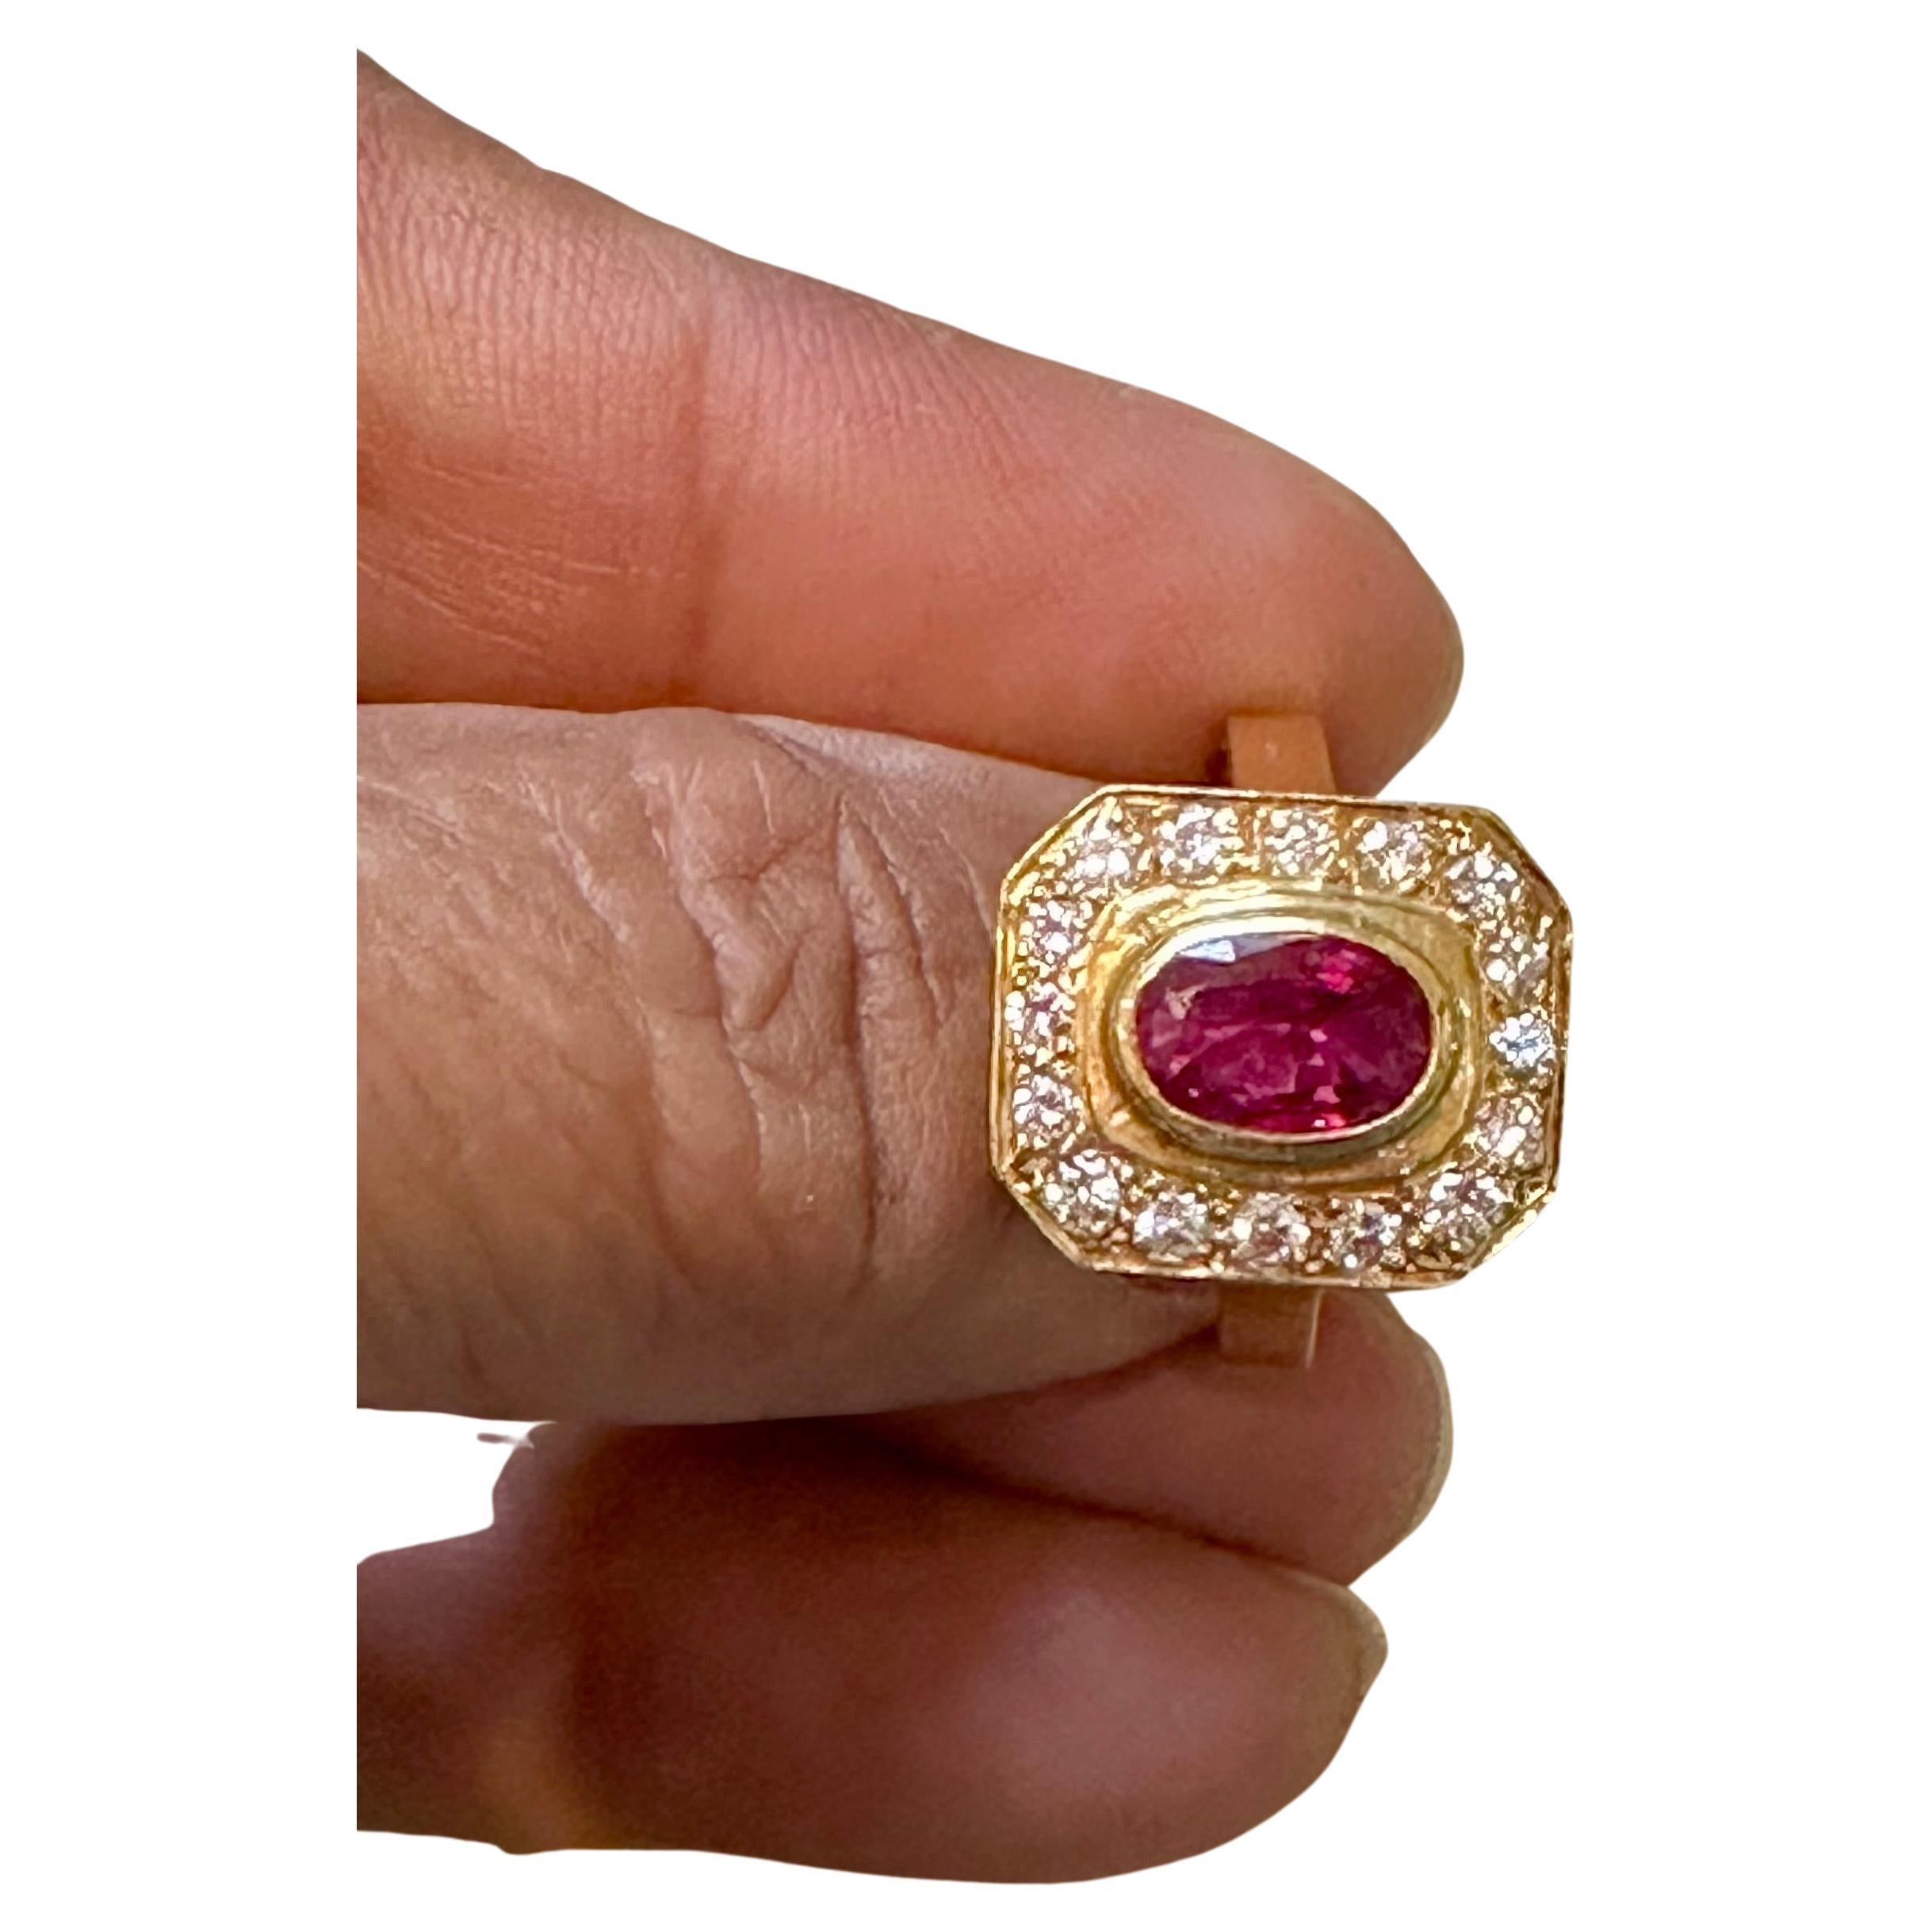 Voici notre exquise bague en or 18 carats, ornée d'un superbe rubis naturel ovale de 1,4 carat et d'environ 0,80 carat de diamants ronds de taille brillant. Cette bague est un véritable témoignage de beauté et d'élégance.

Le rubis naturel de cette